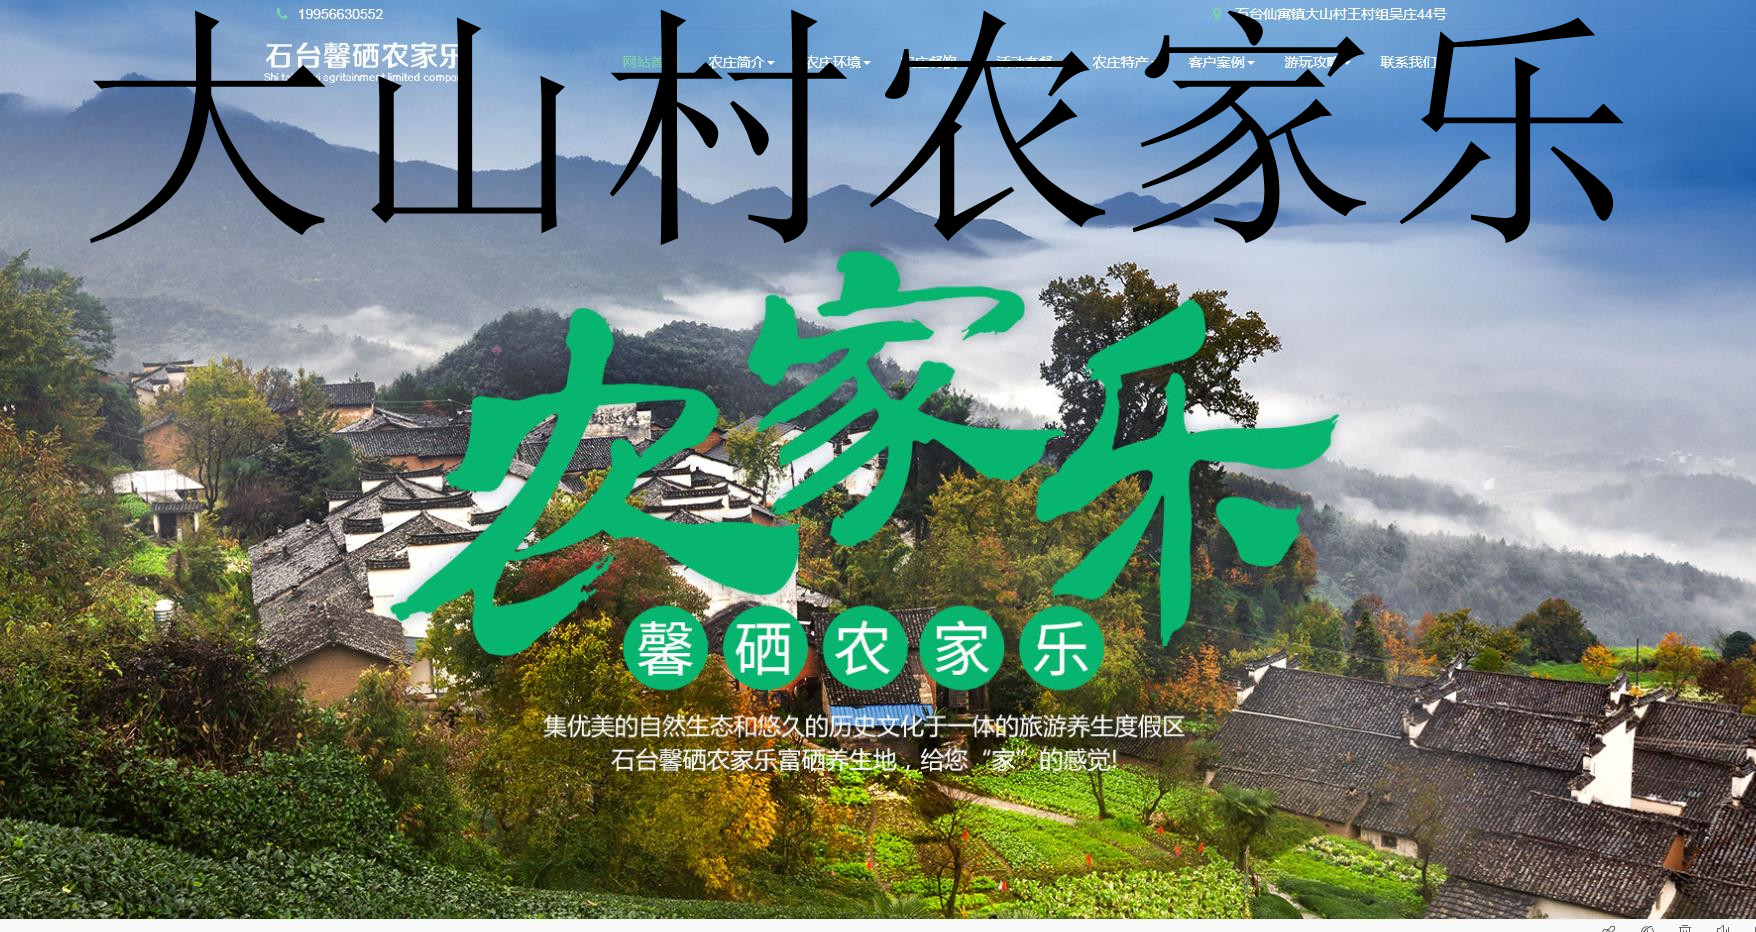  立足绿水青山 打造金山银山——石台县旅游产业跨越式发展工作纪实